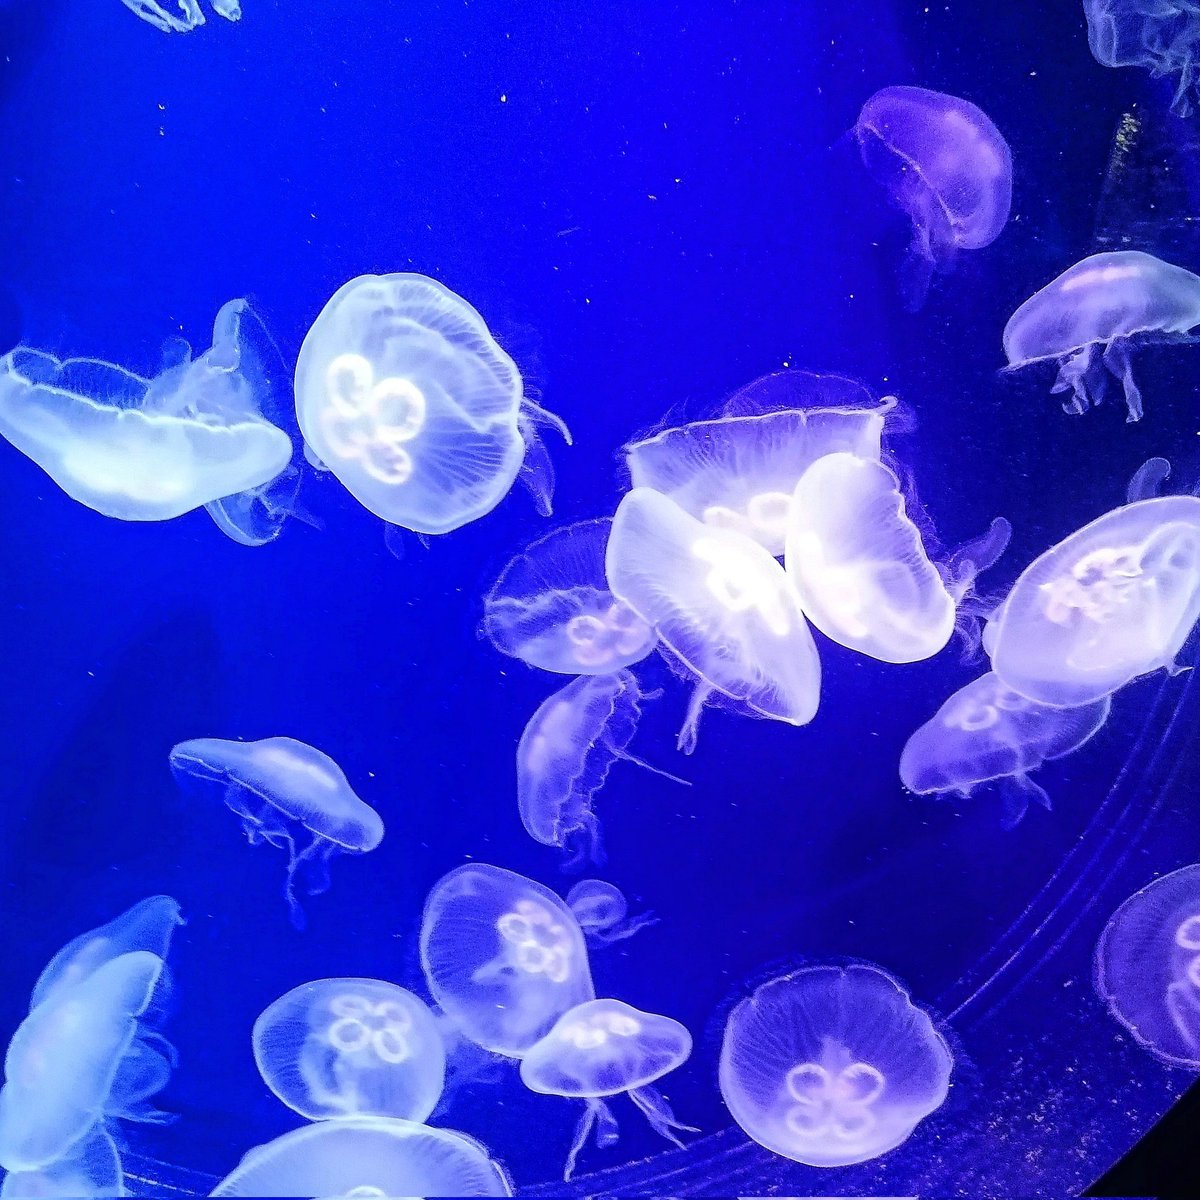 #medusas #jellyfishes #cnidarios #cnidarians #invertebrados #invertebrates #animals #animales #zoología #zoology #biología #biology #fotografía #photography #naturaleza #nature #seaanimals #animalesmarinos #sea #mar